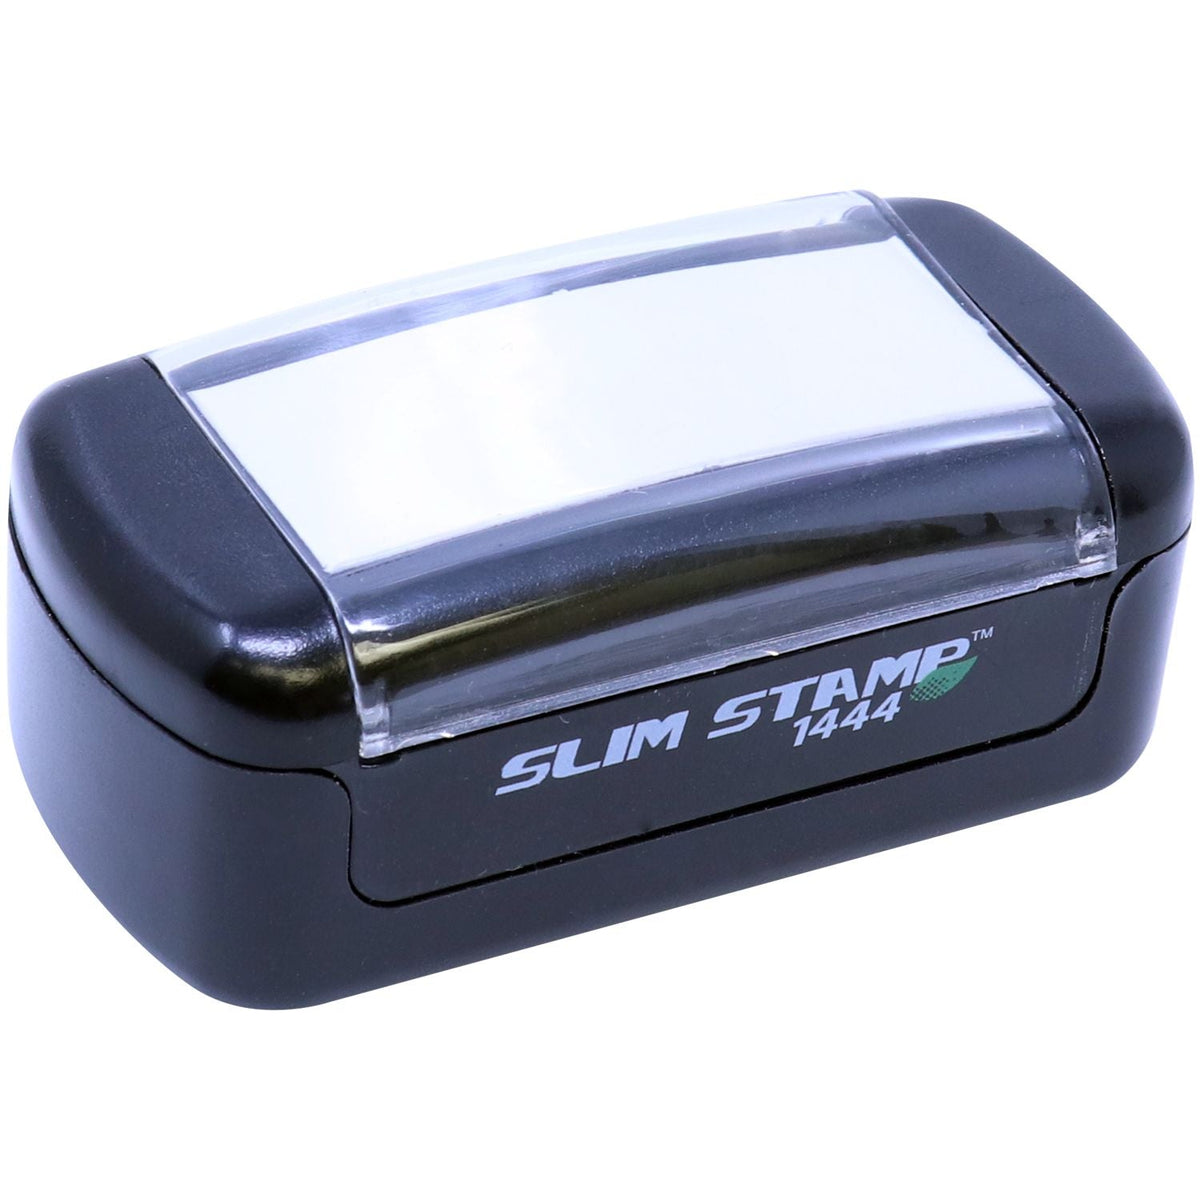 Slimstamp Custom Stamp 1444 Top Front Side